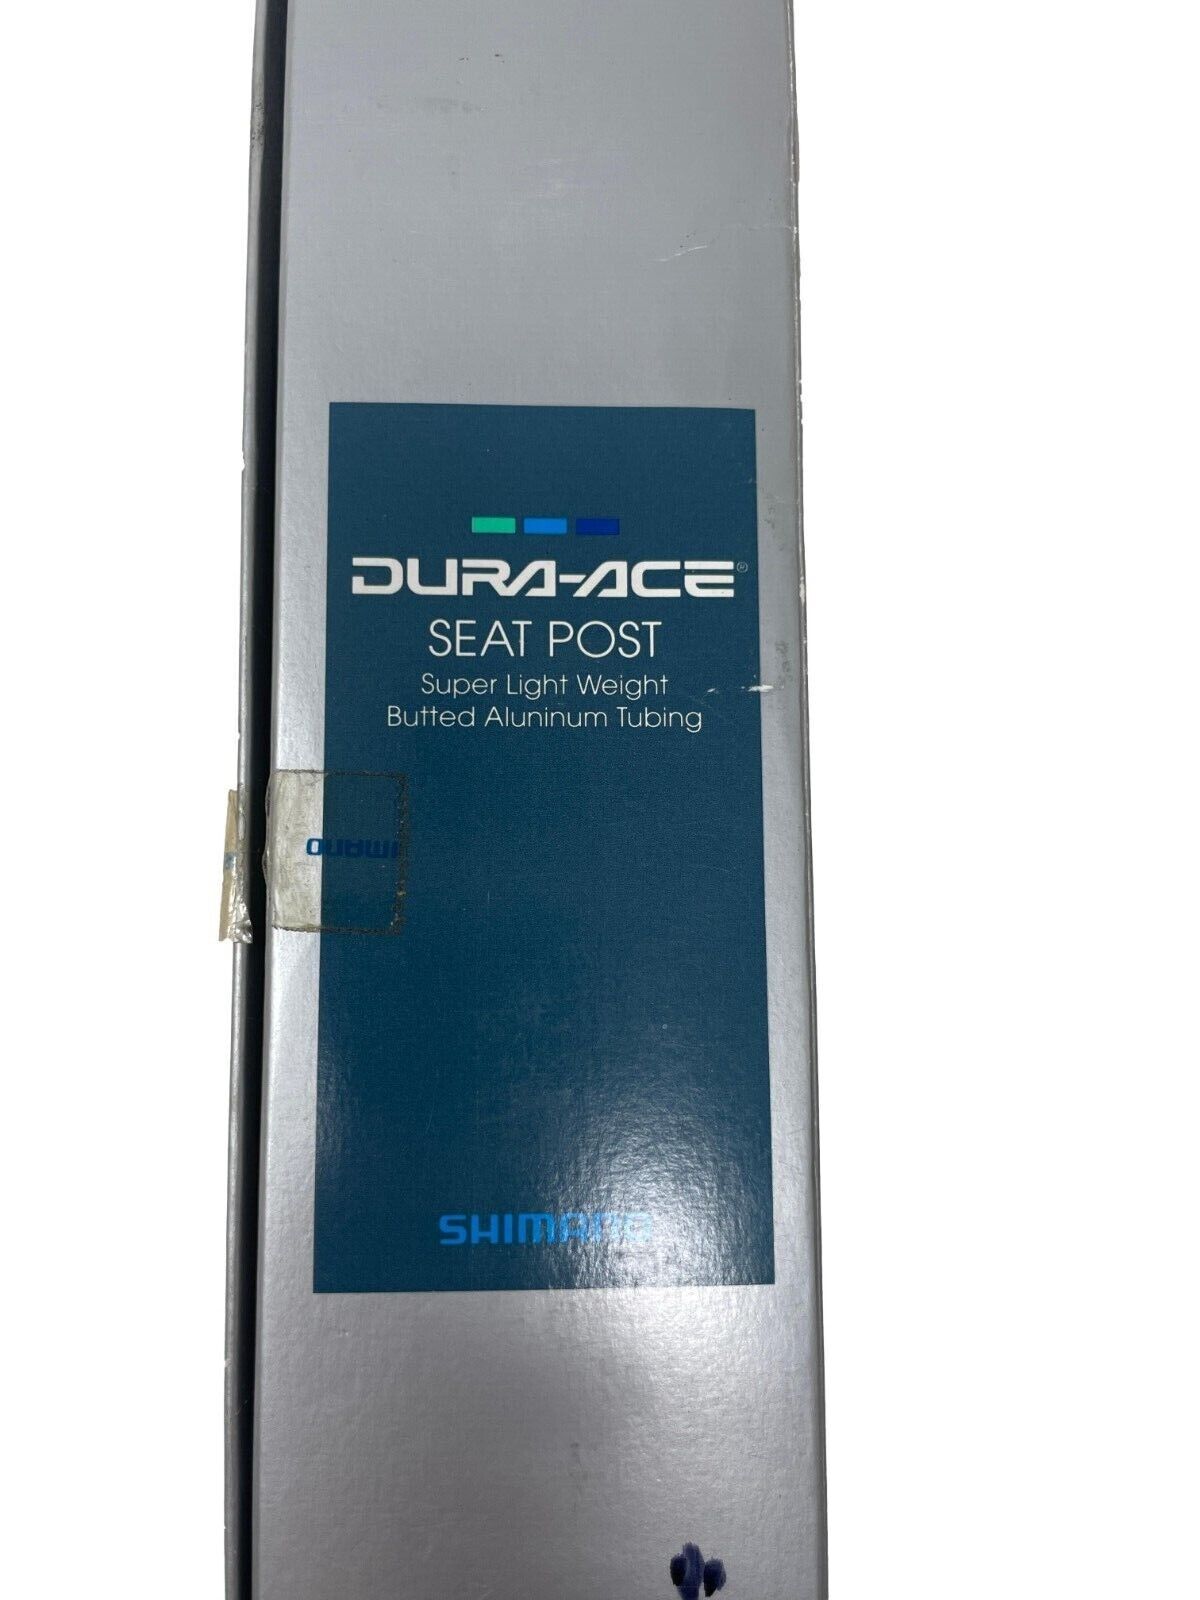 Shimano Dura Ace Seatpost SP-7410 - 27.0mm - Silver - Genuine NOS - Sportandleisure.com